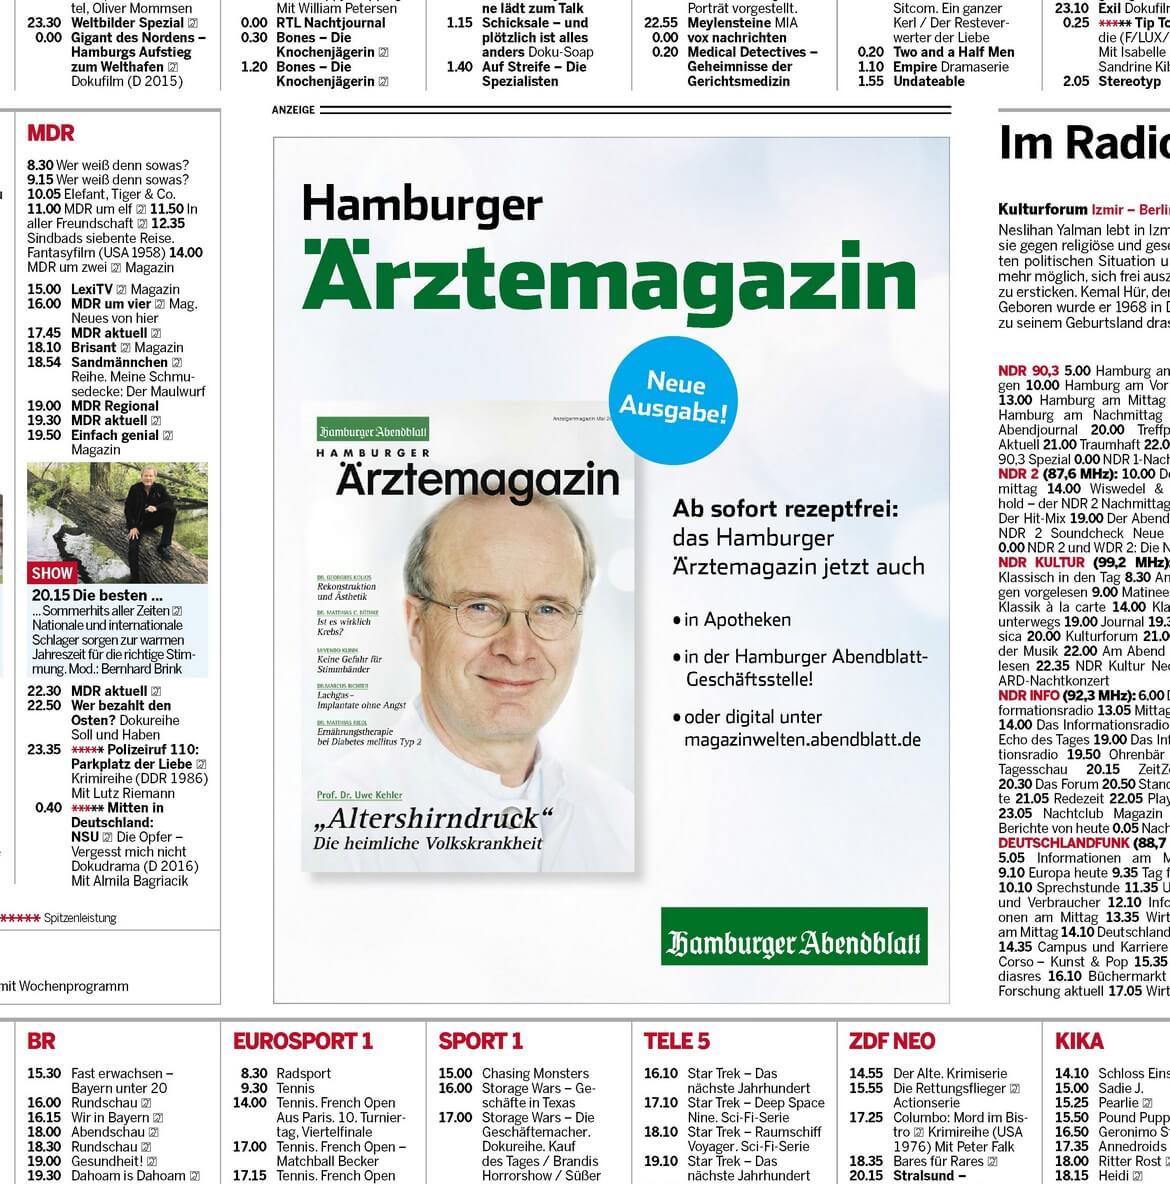 Anzeigen im Abendblatt vom Hamburger Ärztemagazin Mai-Ausgabe